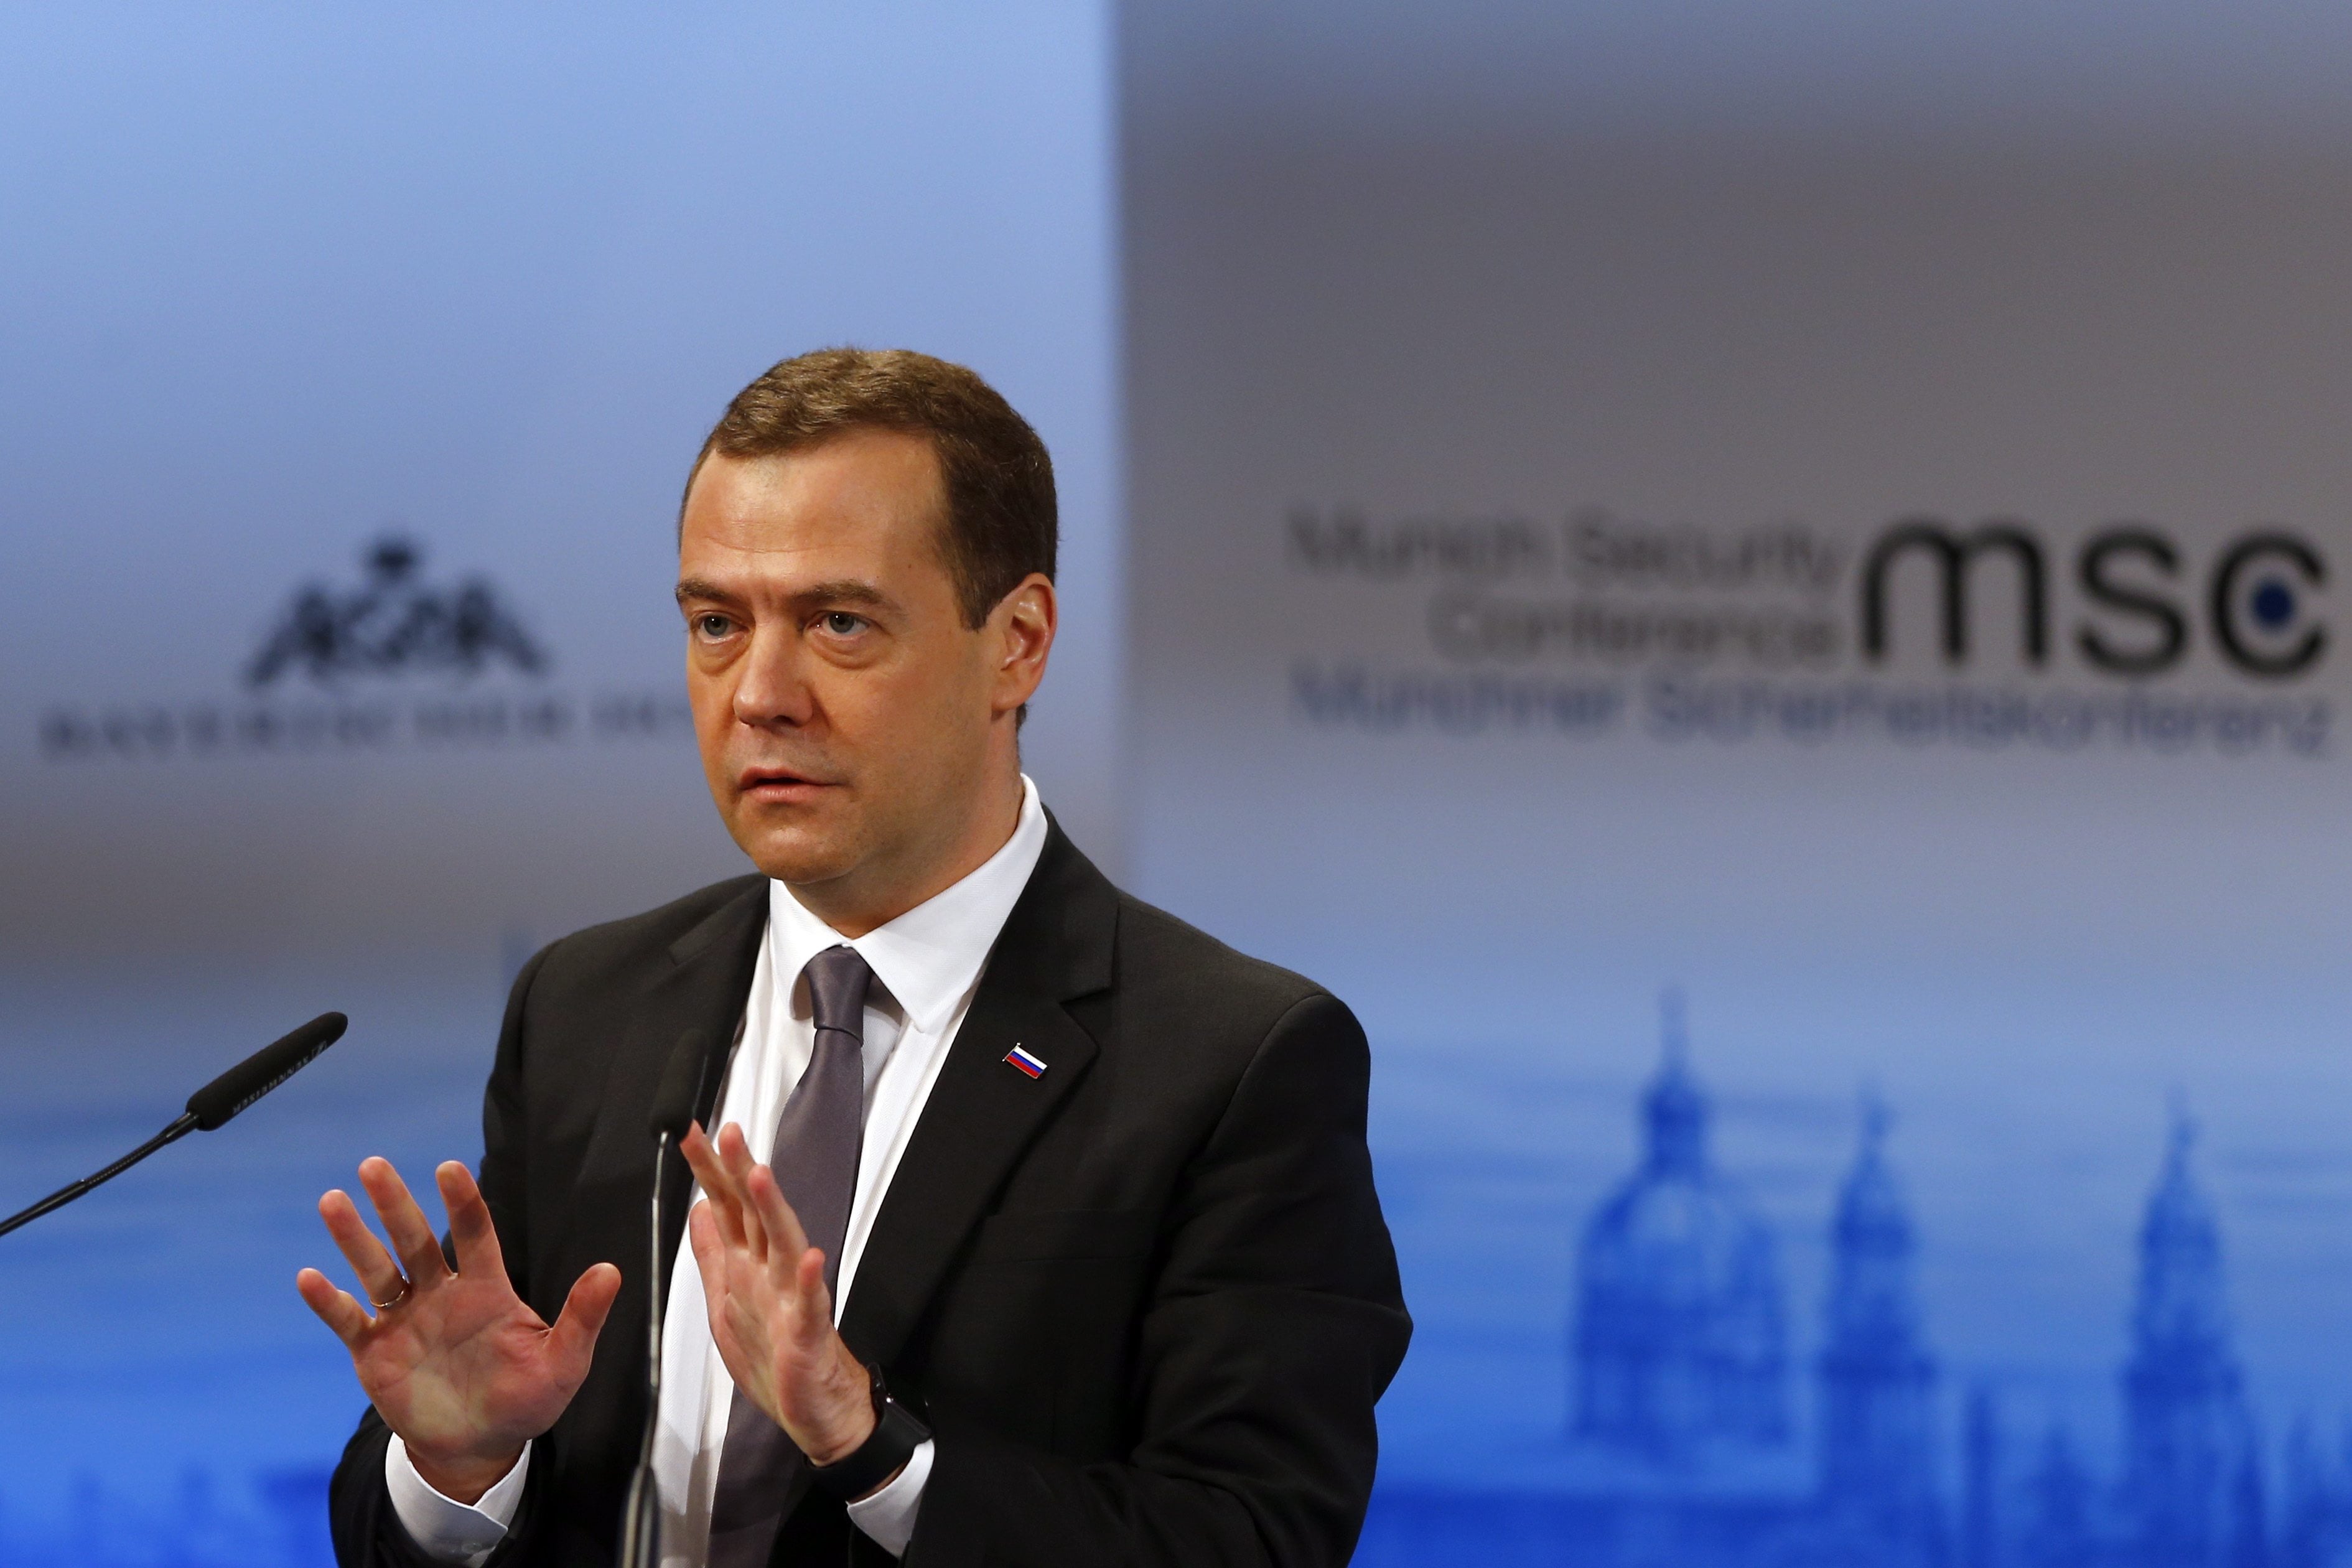 Dmitry Medvedev
Russian prime minister